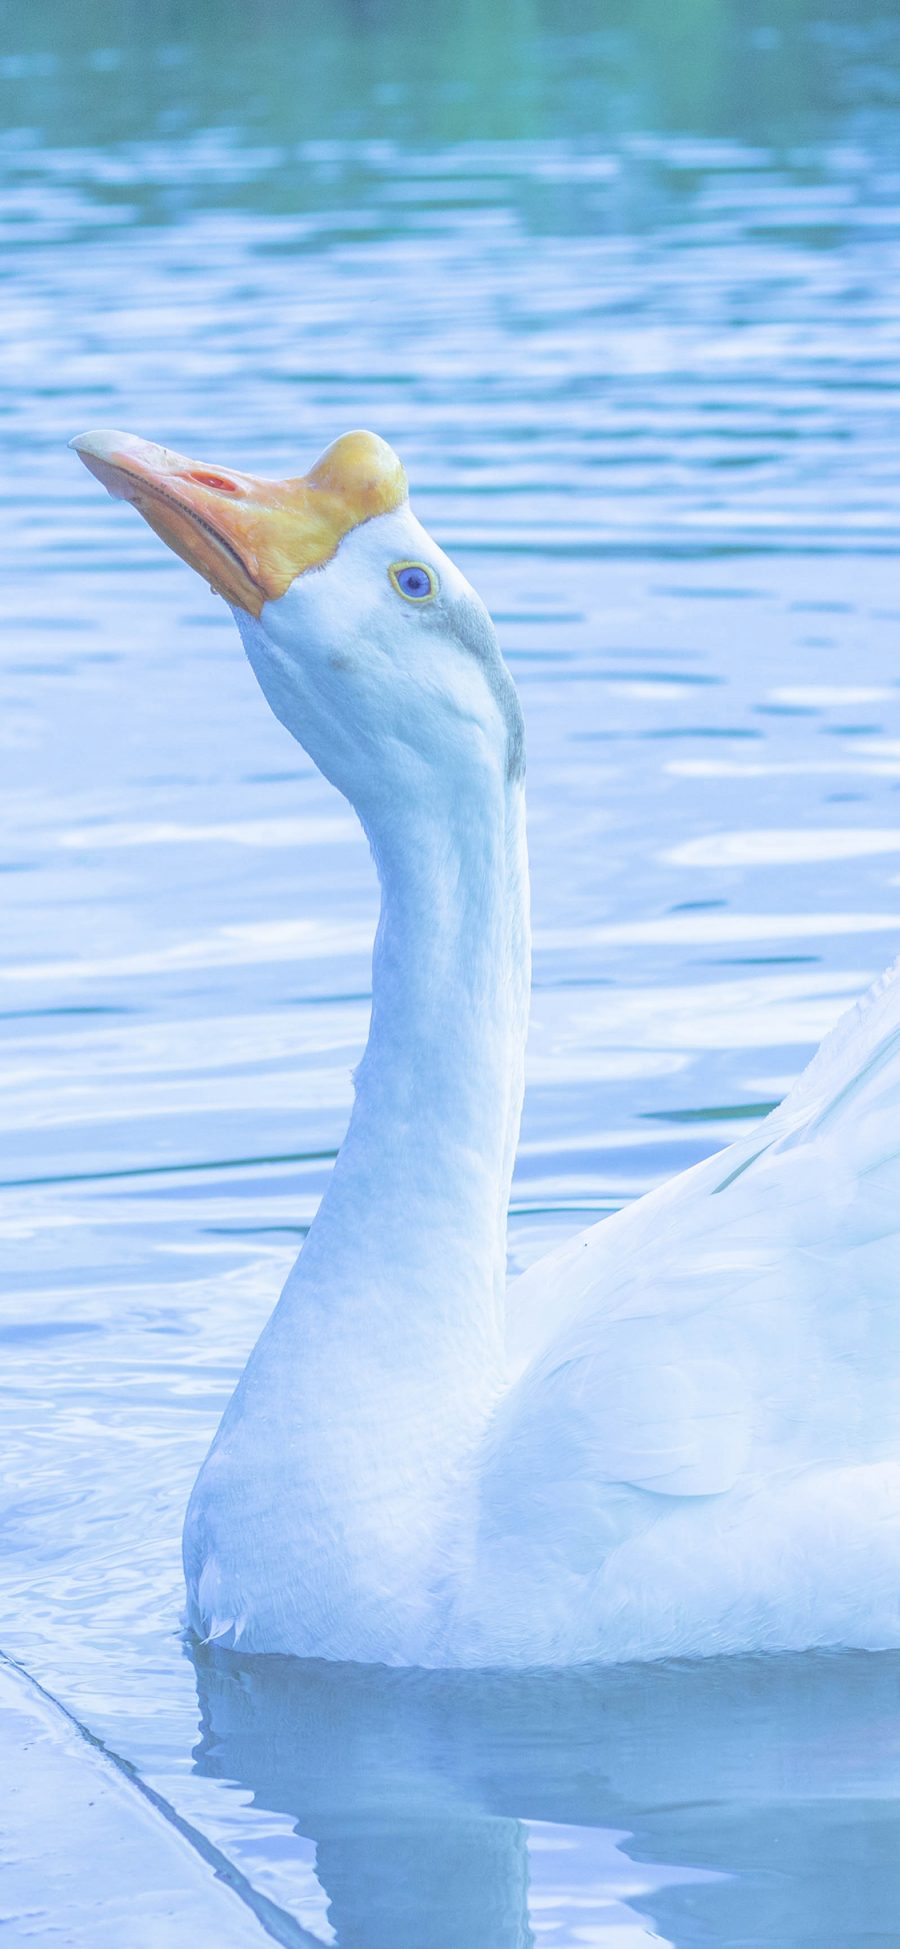 [2436×1125]鹅 水禽 水面 翅膀 羽毛 蓝色 苹果手机壁纸图片